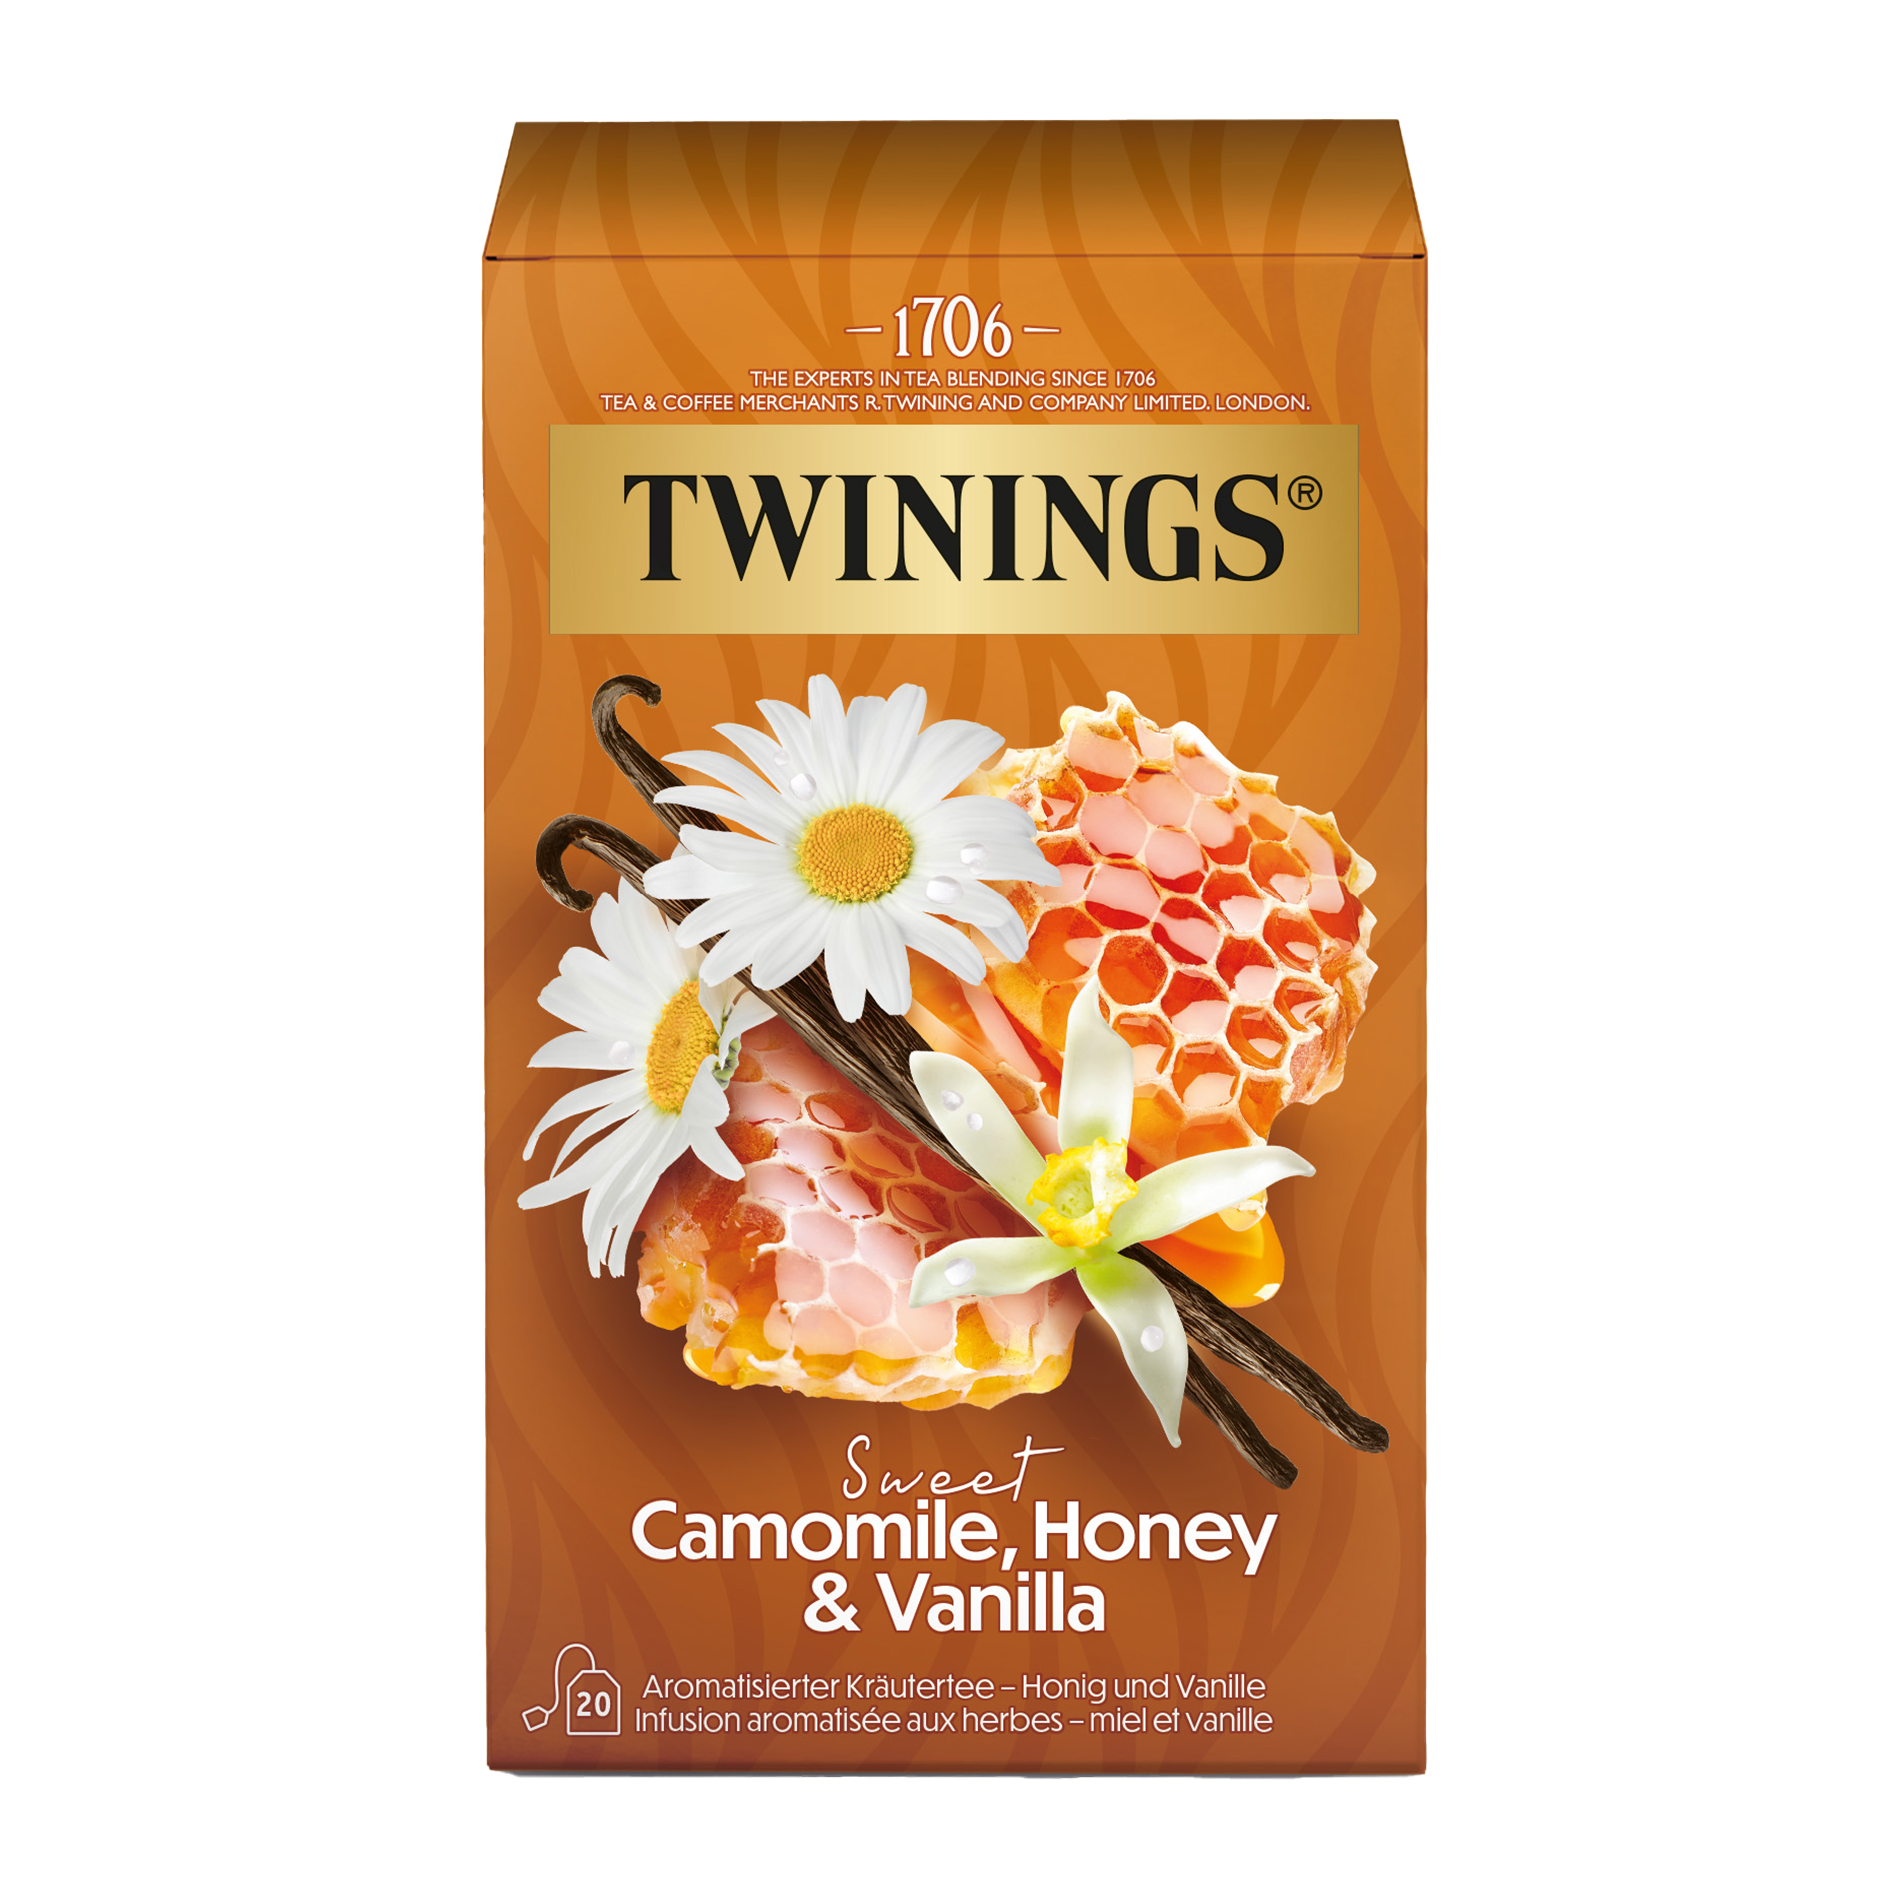  Camomile, Honey & Vanilla - der Kräutertee